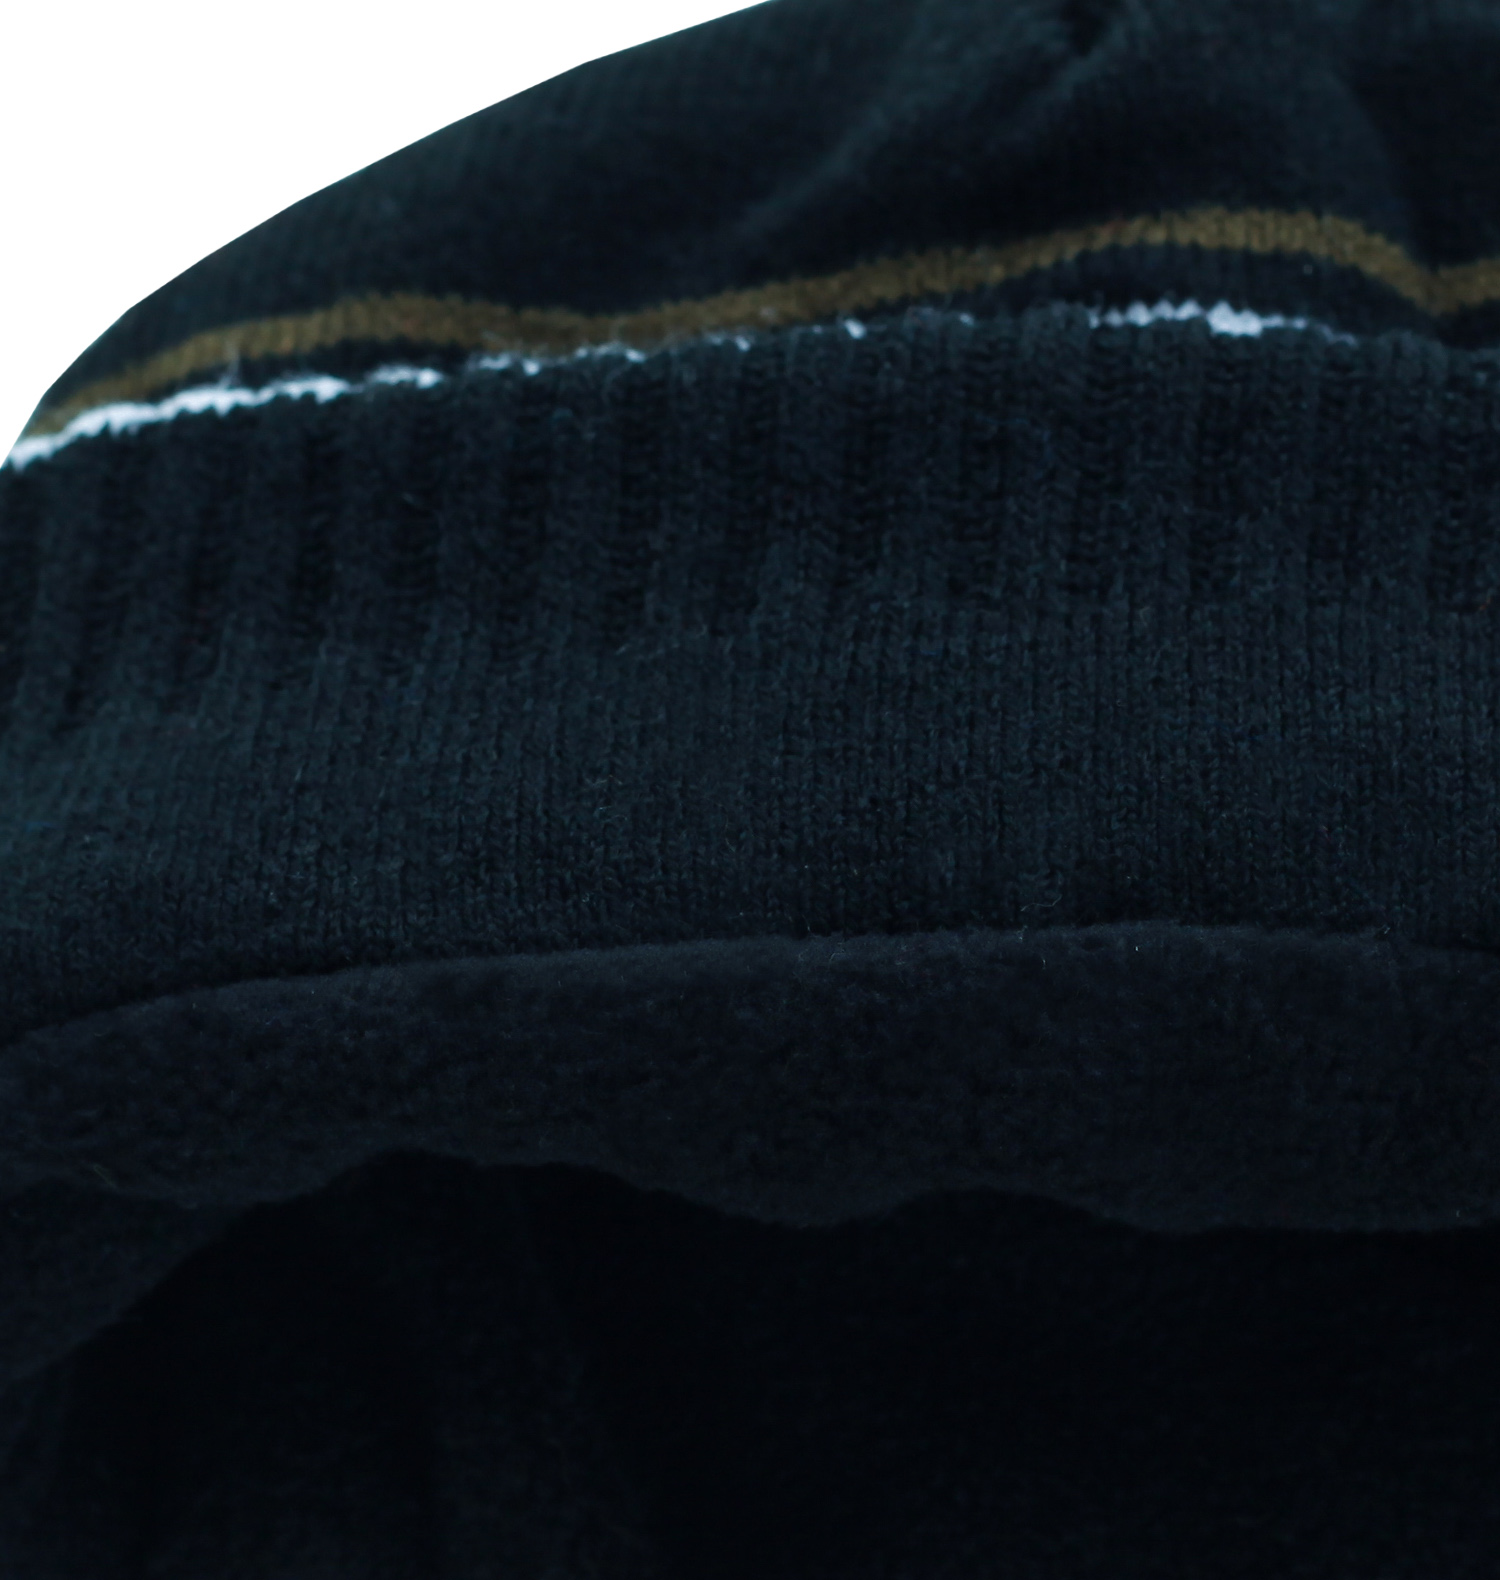 Заказать неприхотливую утепленную флисом полосатую мужскую шапку Haneybrook с отворотом по оптимальной цене